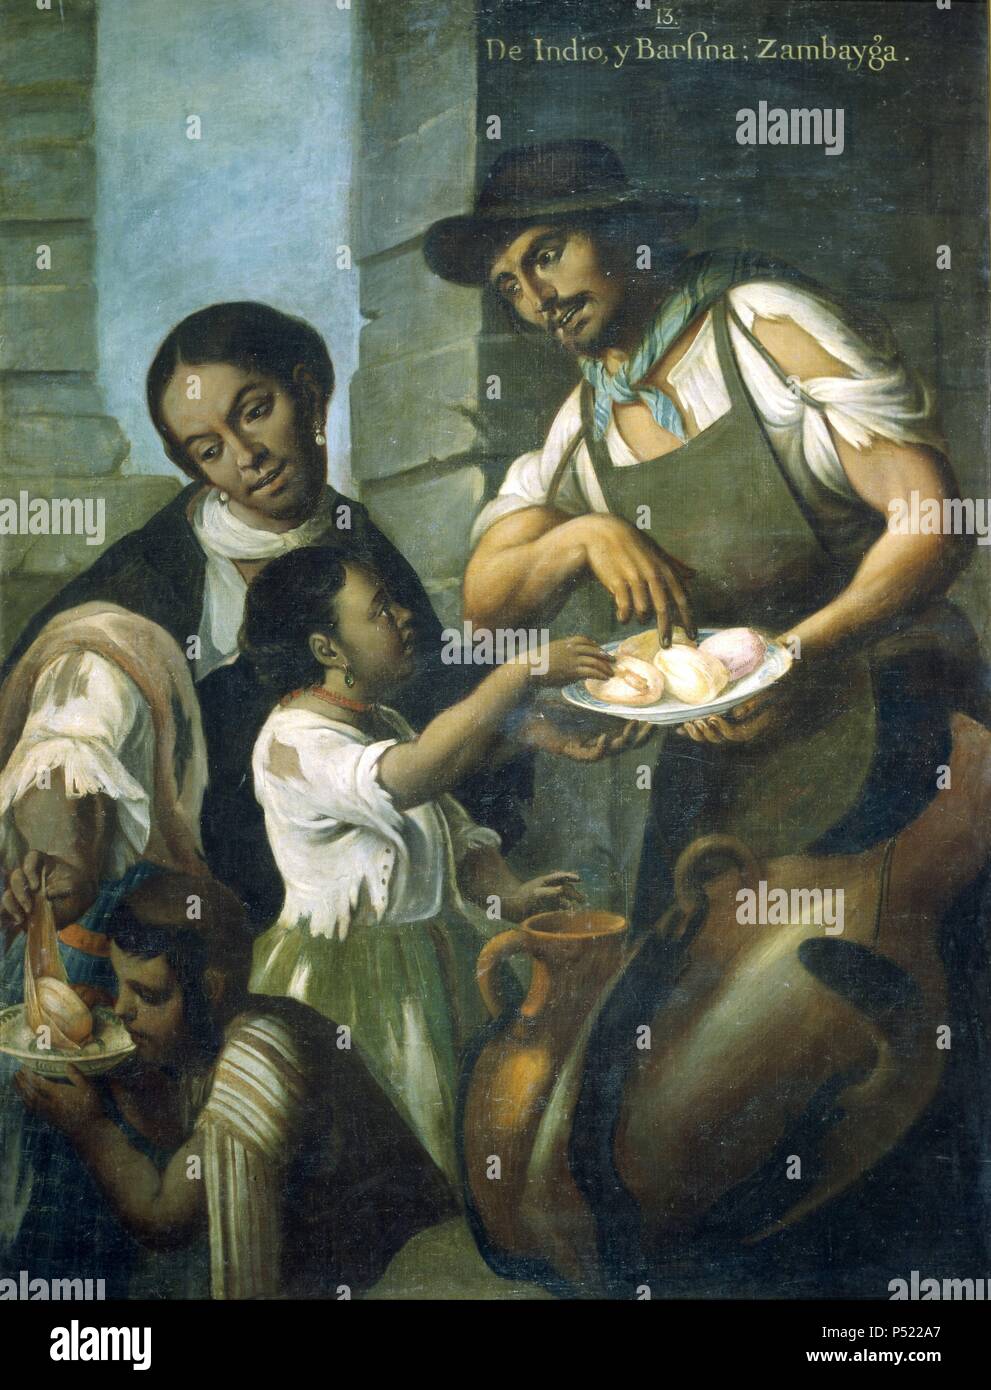 Miguel Cabrera / 'De Indio y Barzina: Zambayga', 1763. Museum: MUSEO DE AMERICA. Stock Photo